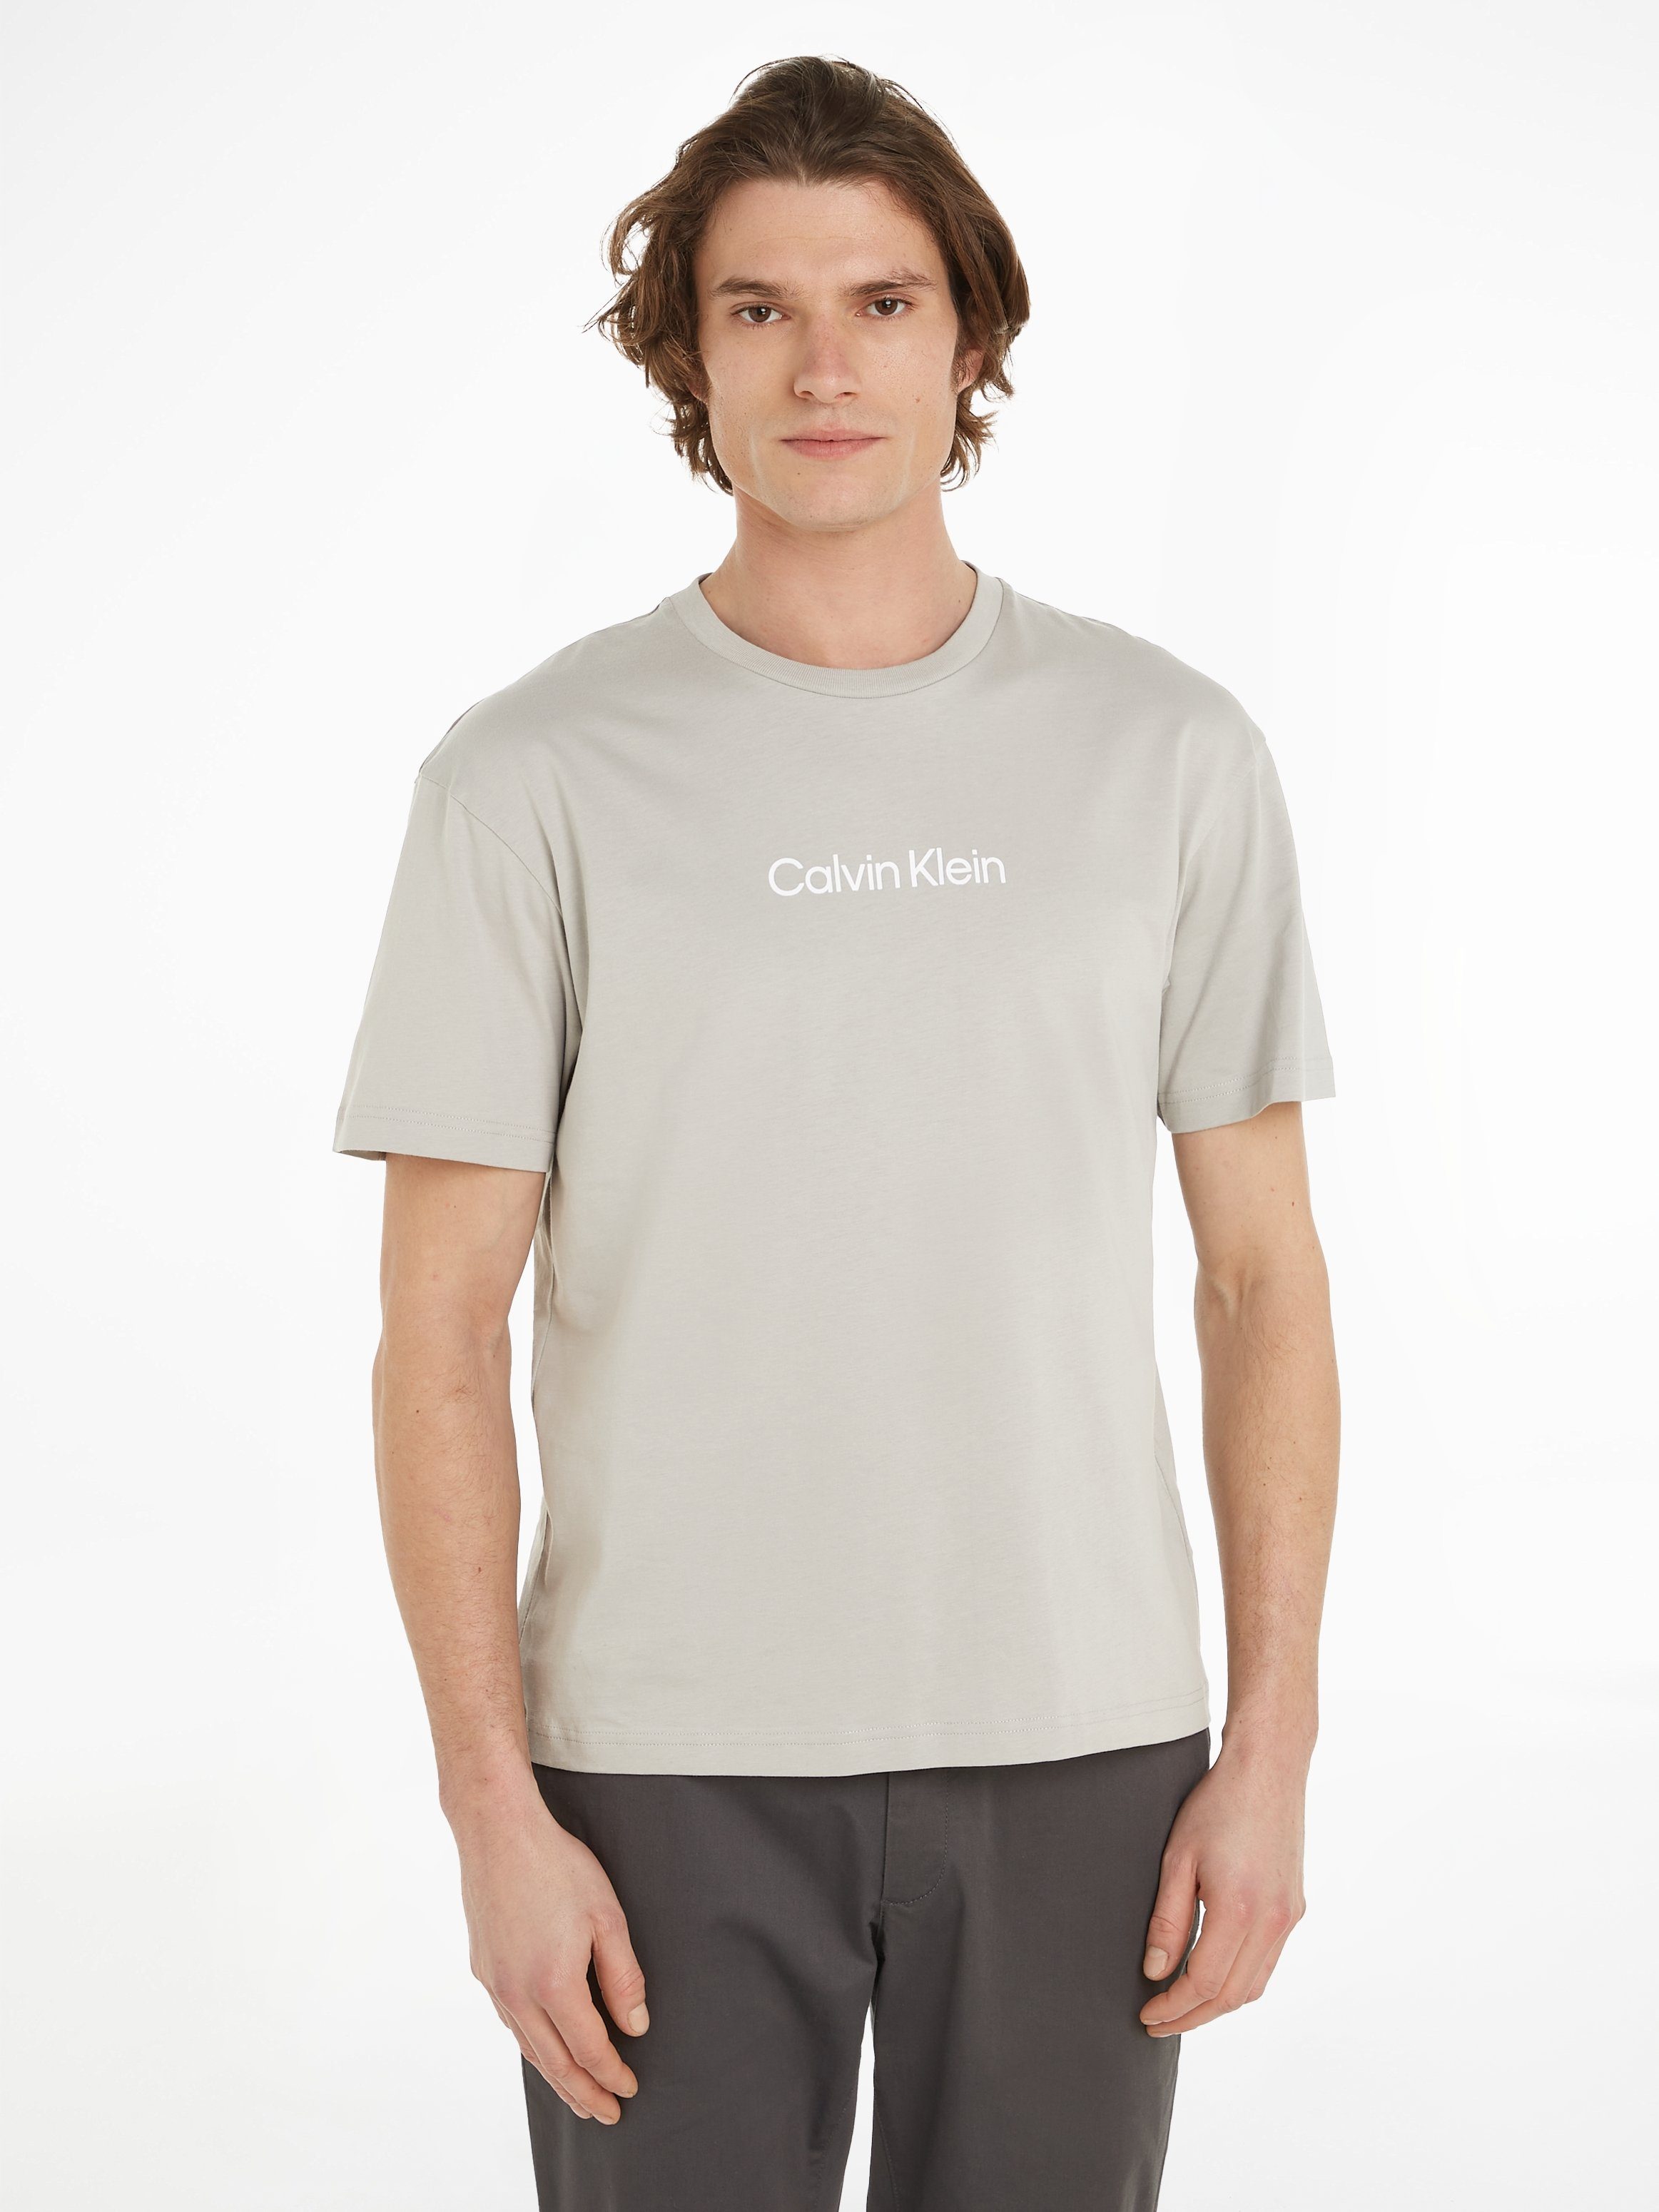 Absolut günstigster Preis Calvin Klein T-Shirt COMFORT LOGO Ghost HERO Gray Markenlabel aufgedrucktem mit T-SHIRT